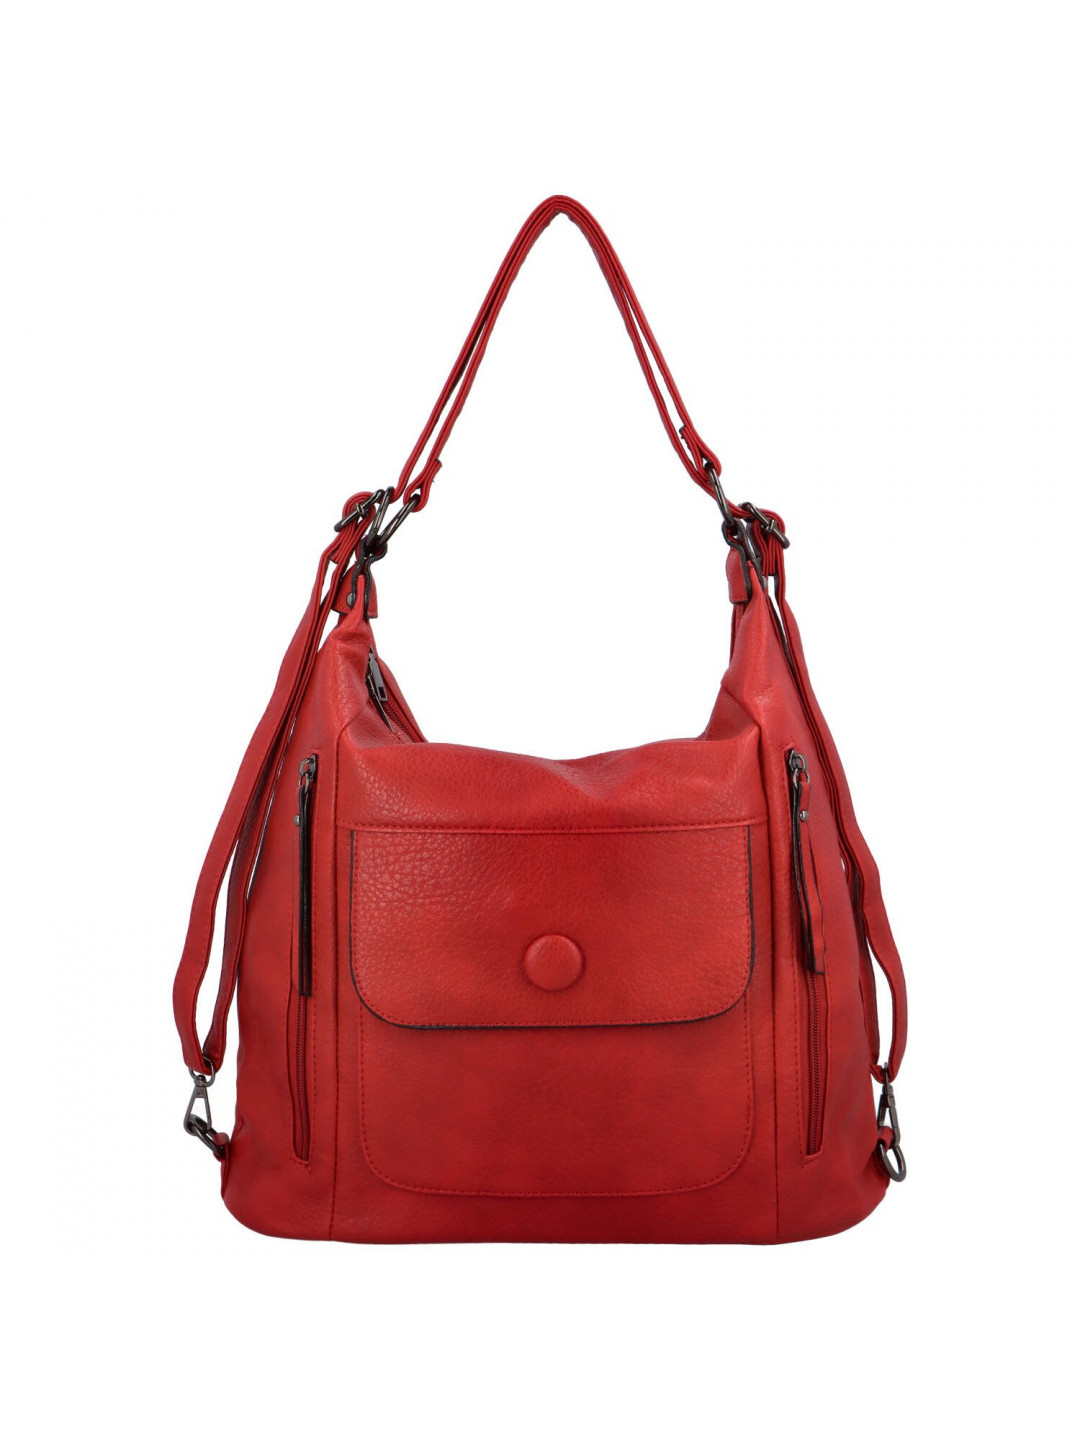 Trendová dámská kabelka batoh Retion tmavě červená